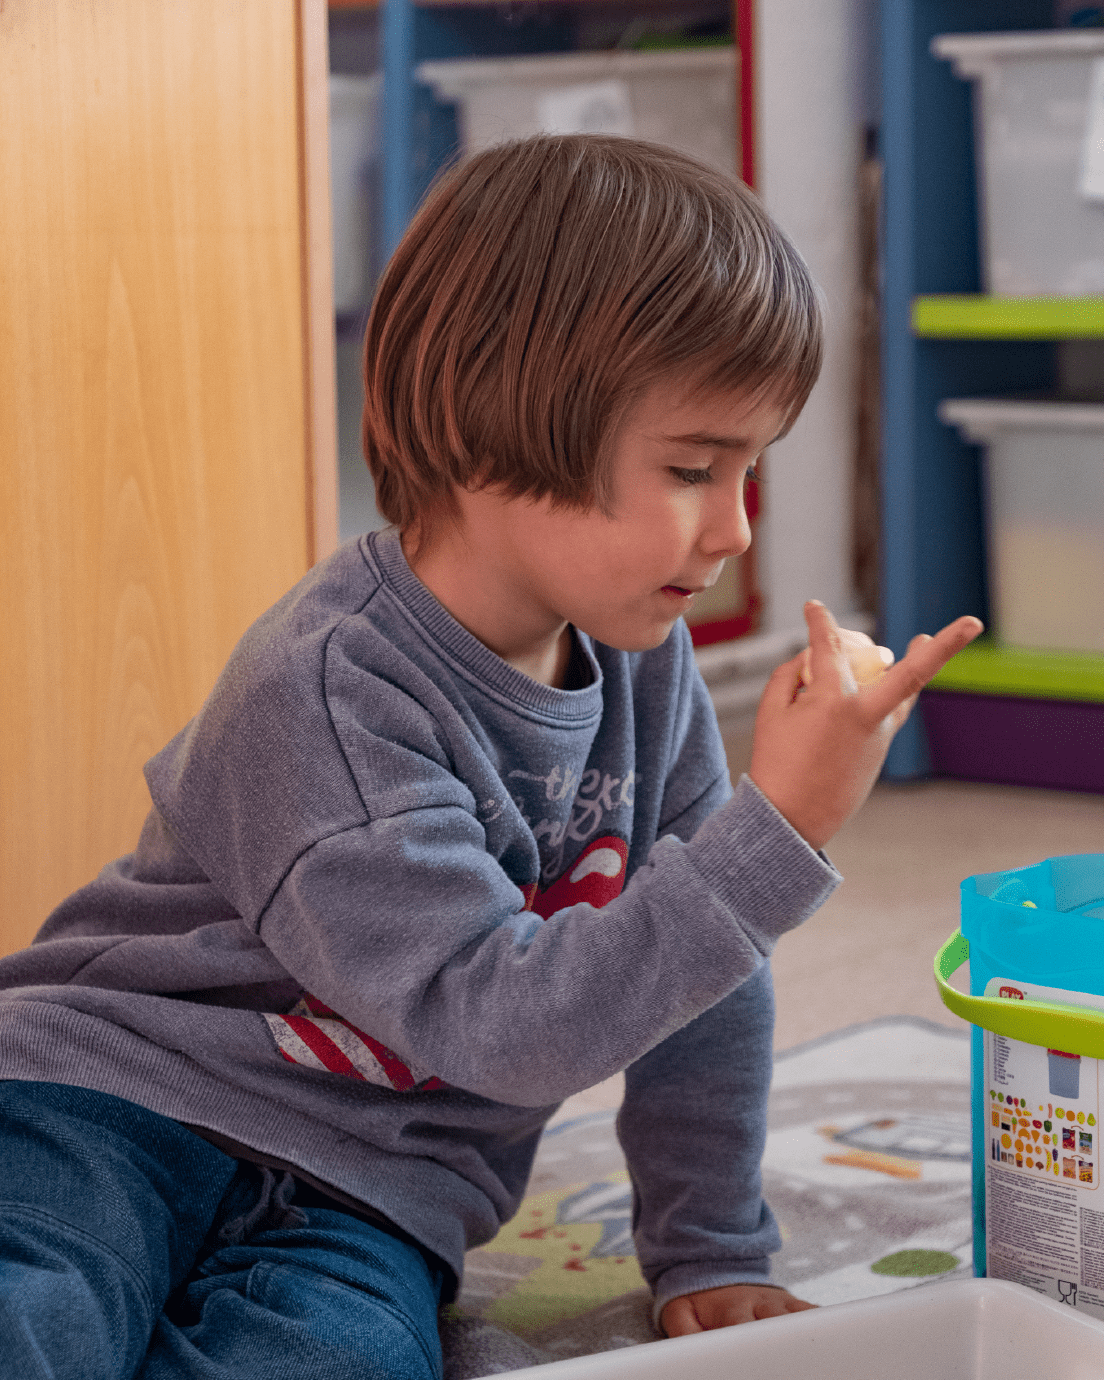 Autismo en niños de 3 a 6 años: cómo identificarlo y tratarlo adecuadamente